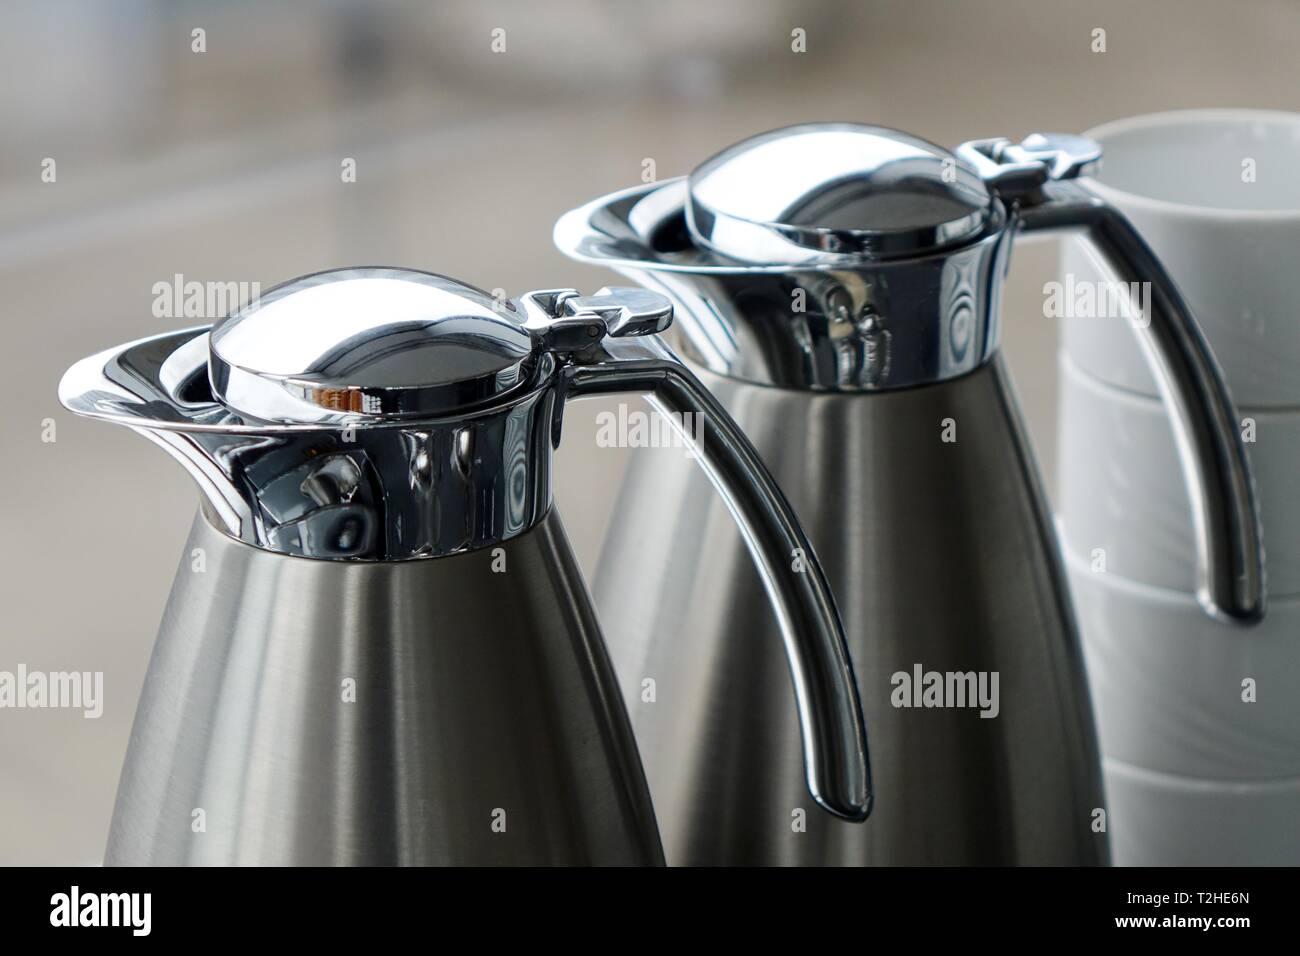 Coffee pots, thermos flasks, Germany Stock Photo - Alamy